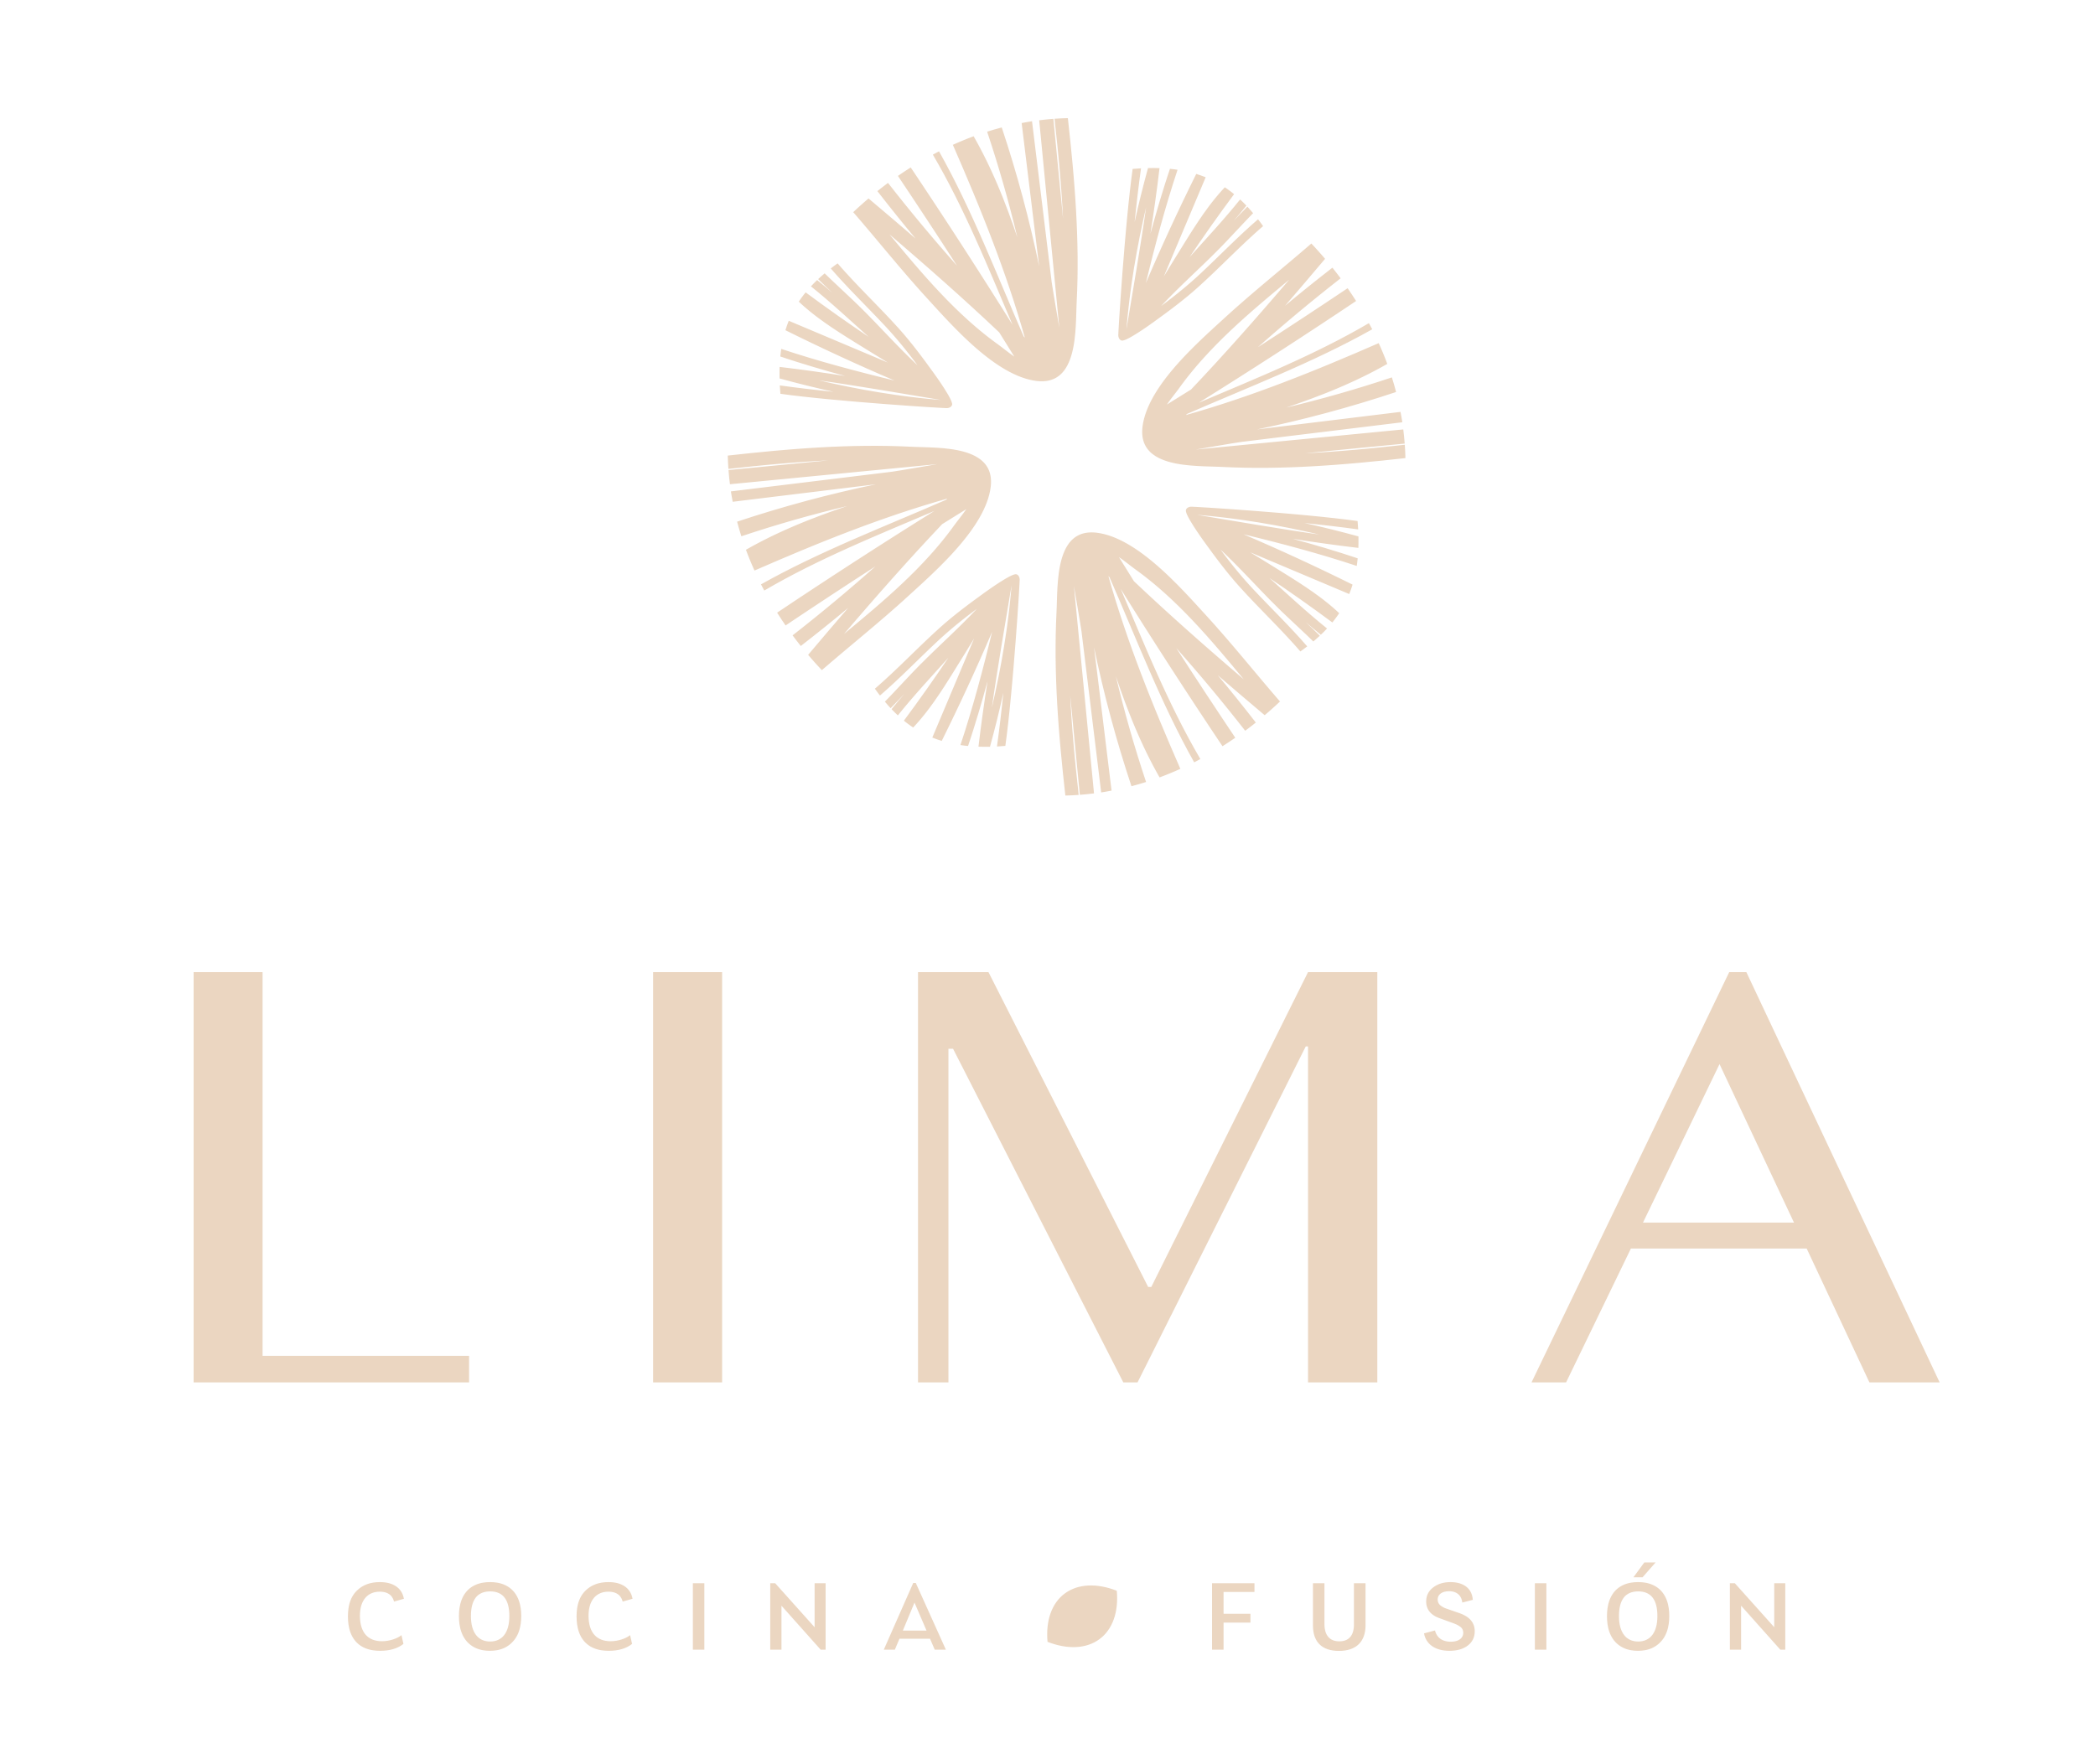 Lima Restaurante logo